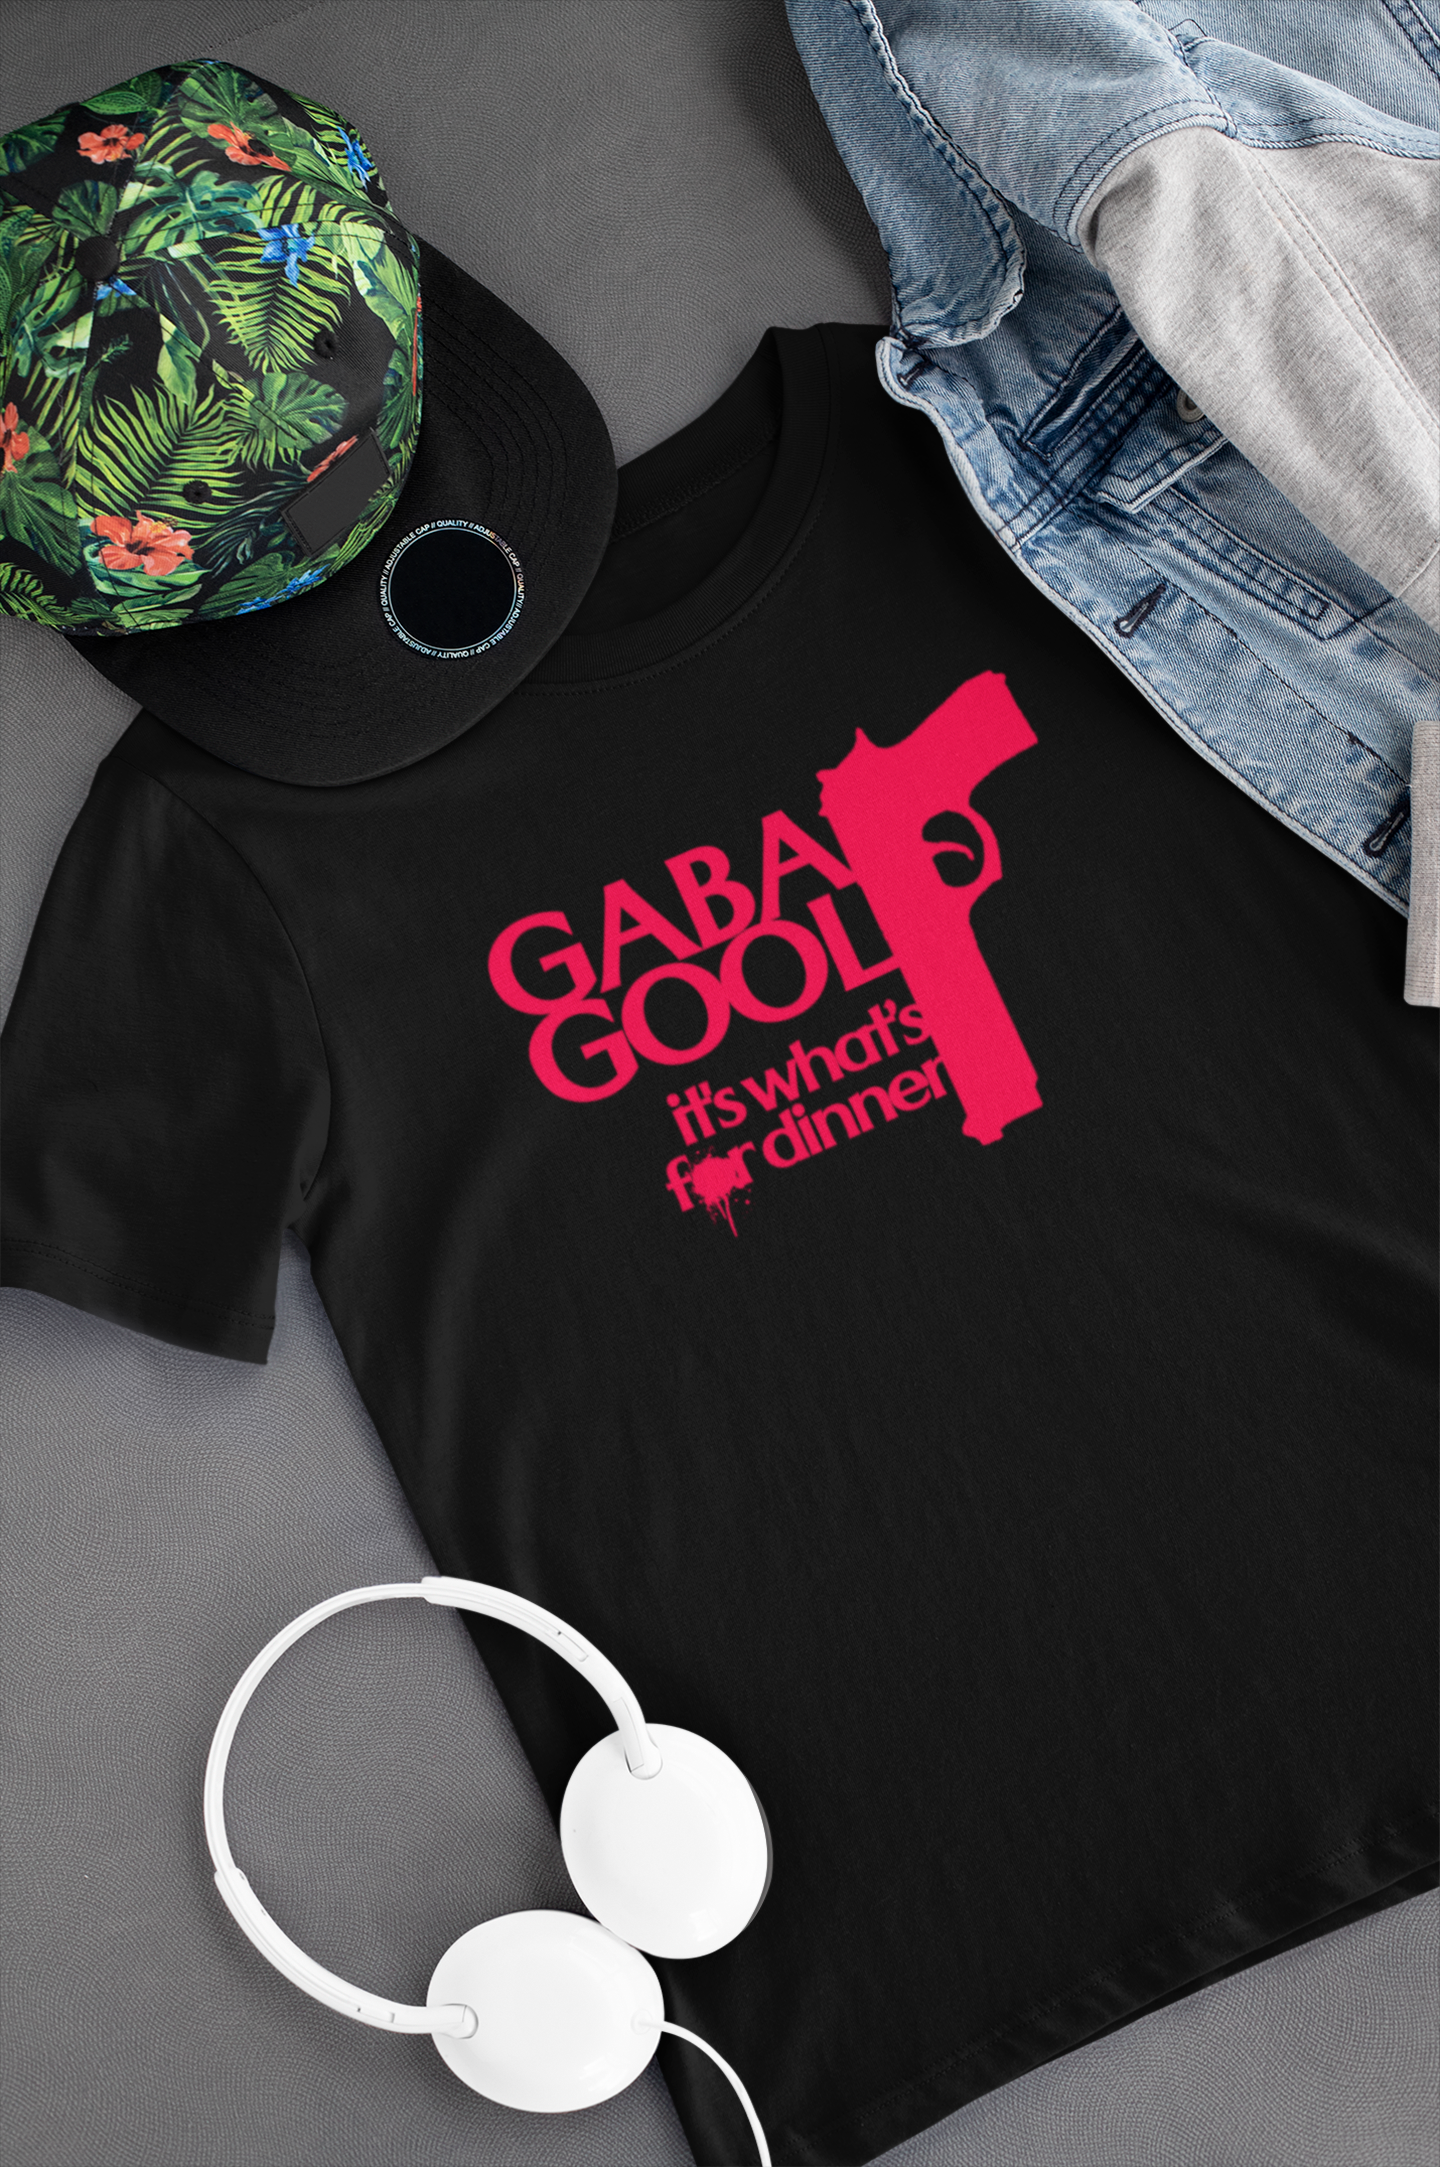 Camiseta "Gabagool" - The Sopranos - Séries de TV